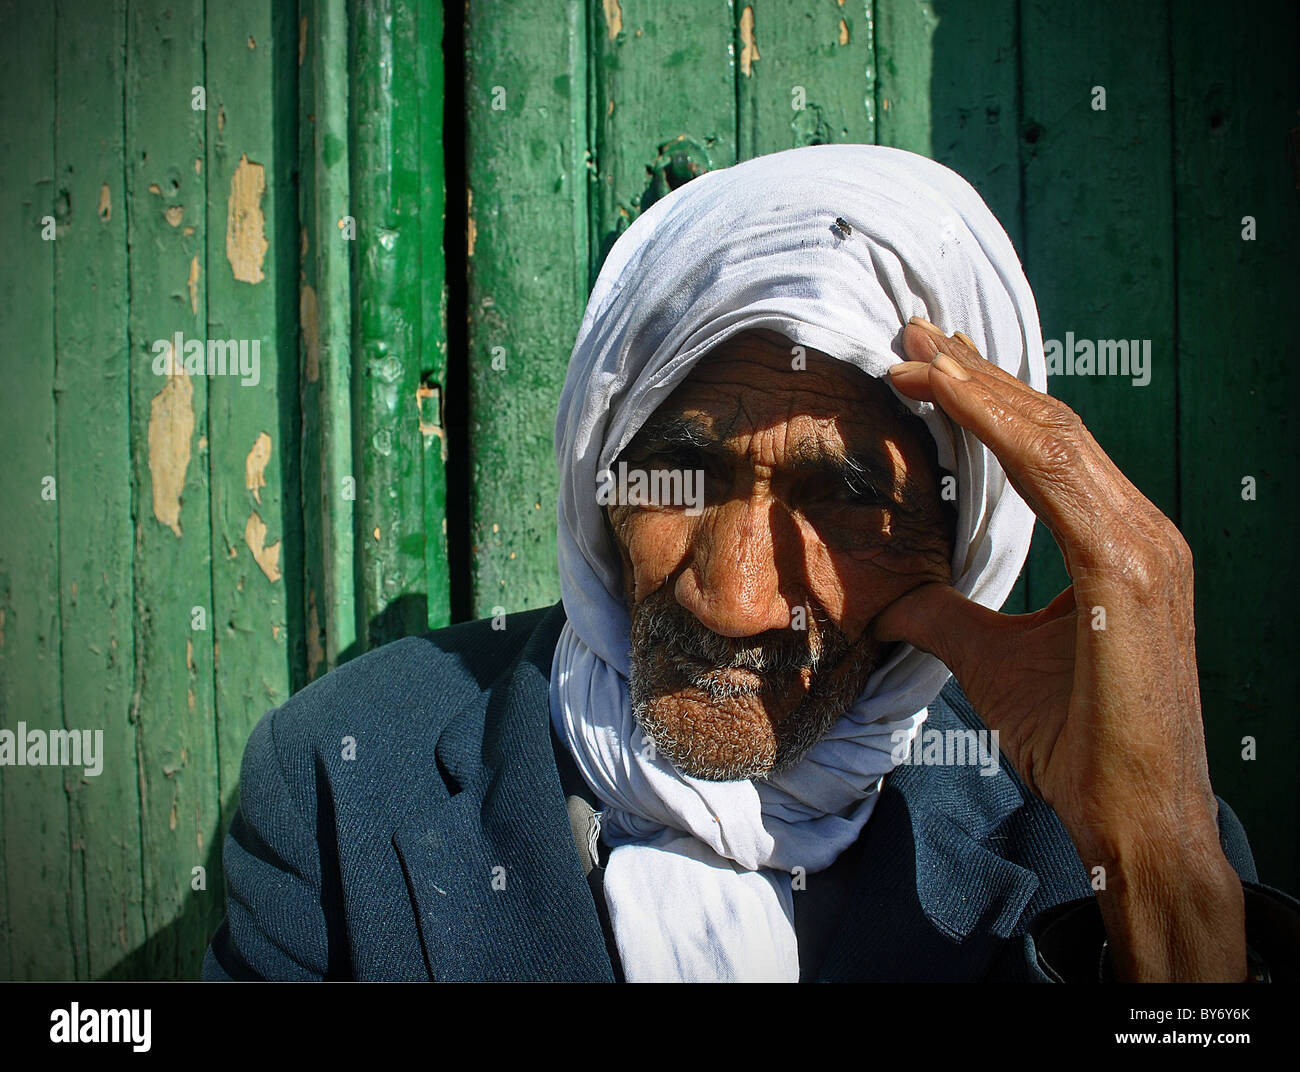 Elderly Tunisian man sitting in doorway, Tozeur, Tunisia Stock Photo